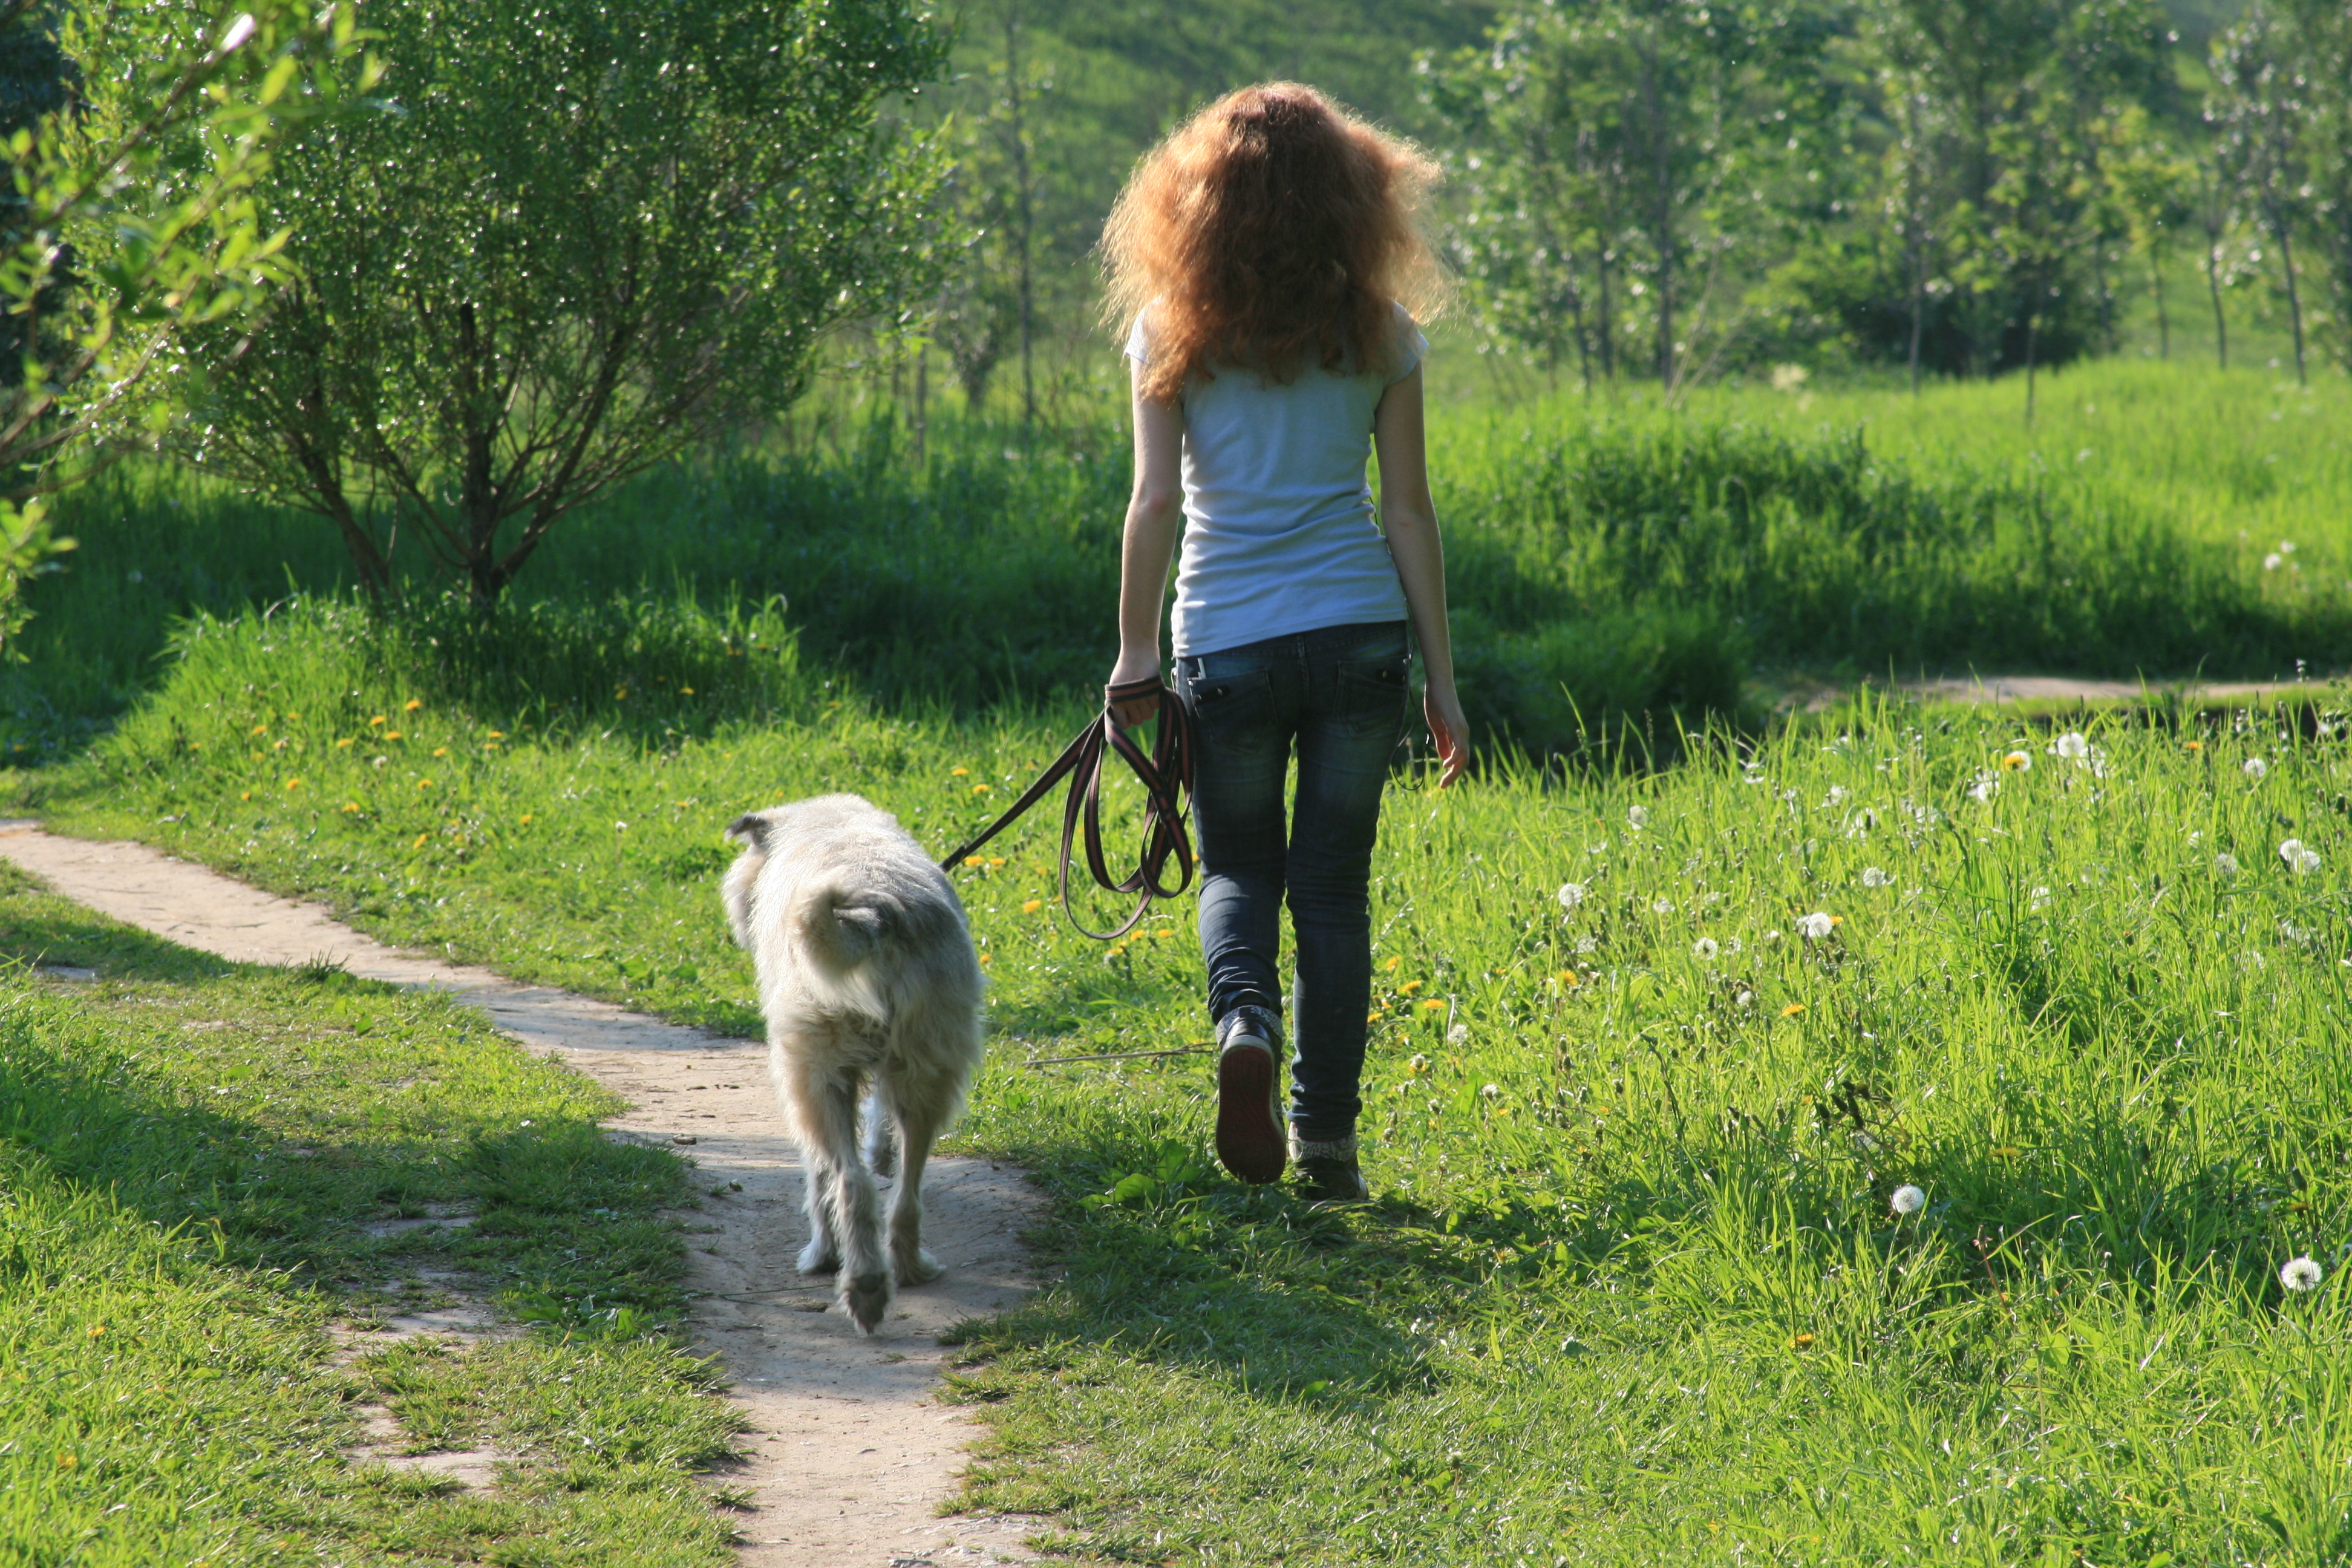 Скачай песни не ходи девки гулять. Девочка с собакой. Девушка гуляет с собакой на поводке. Девушка гуляет с собакой. Девушка на прогулке с собакой.